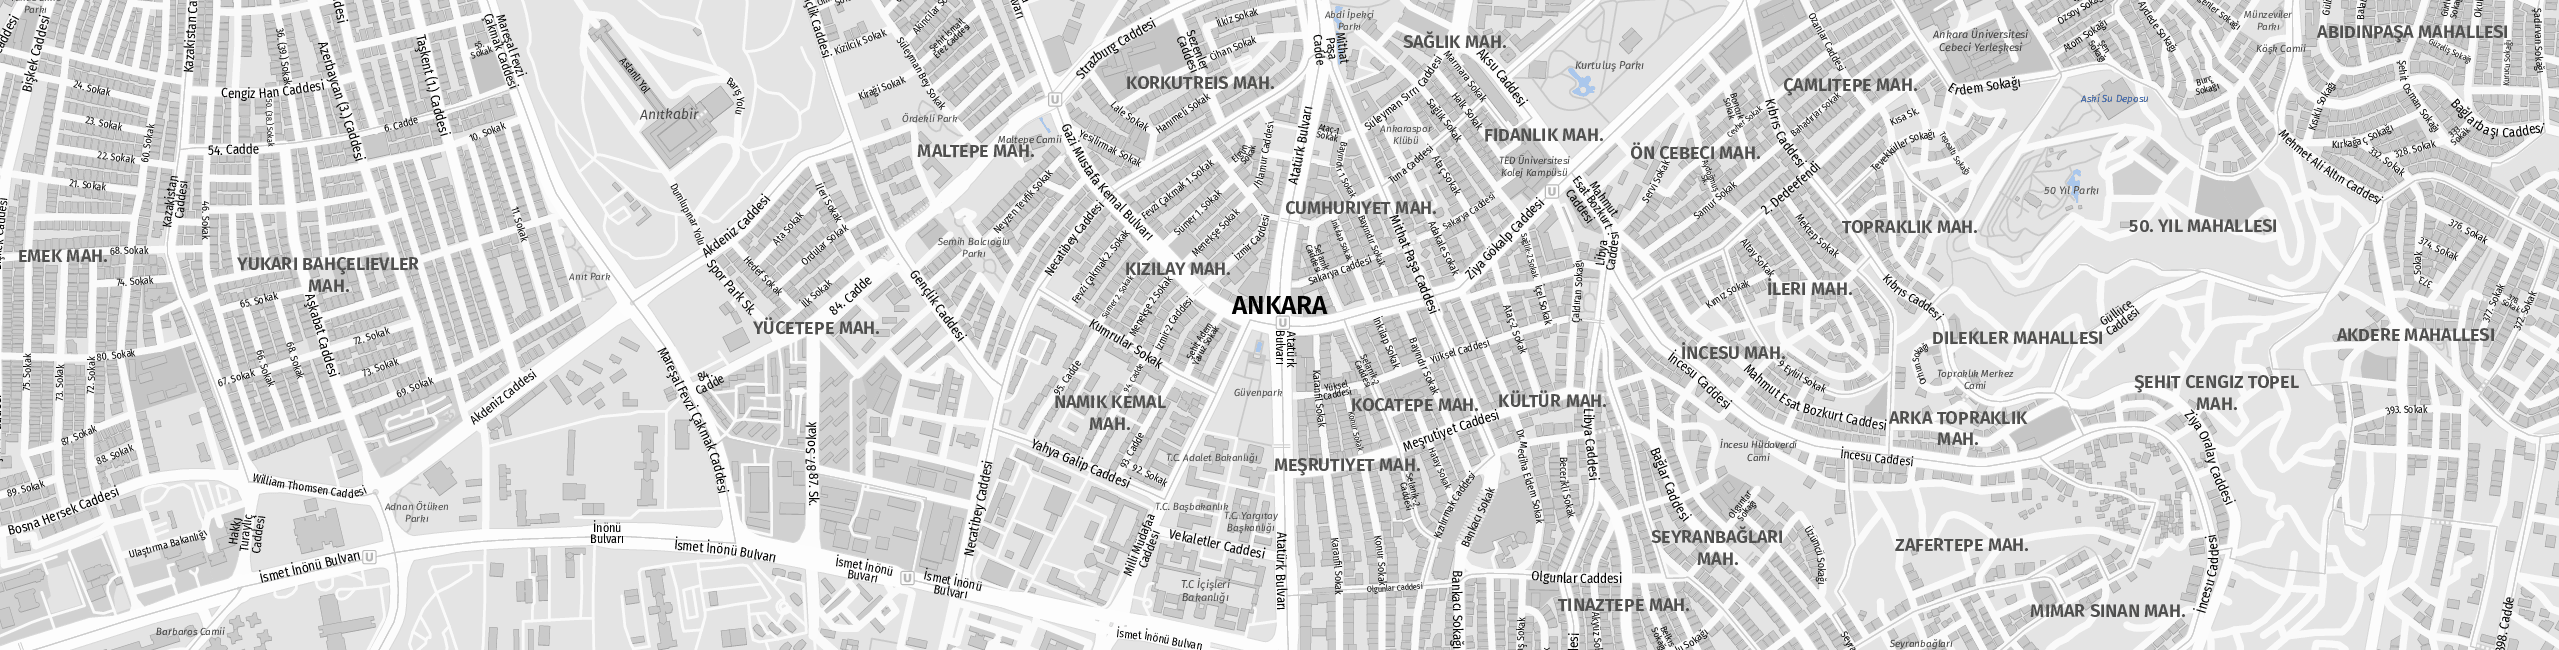 Stadtplan Ankara zum Downloaden.